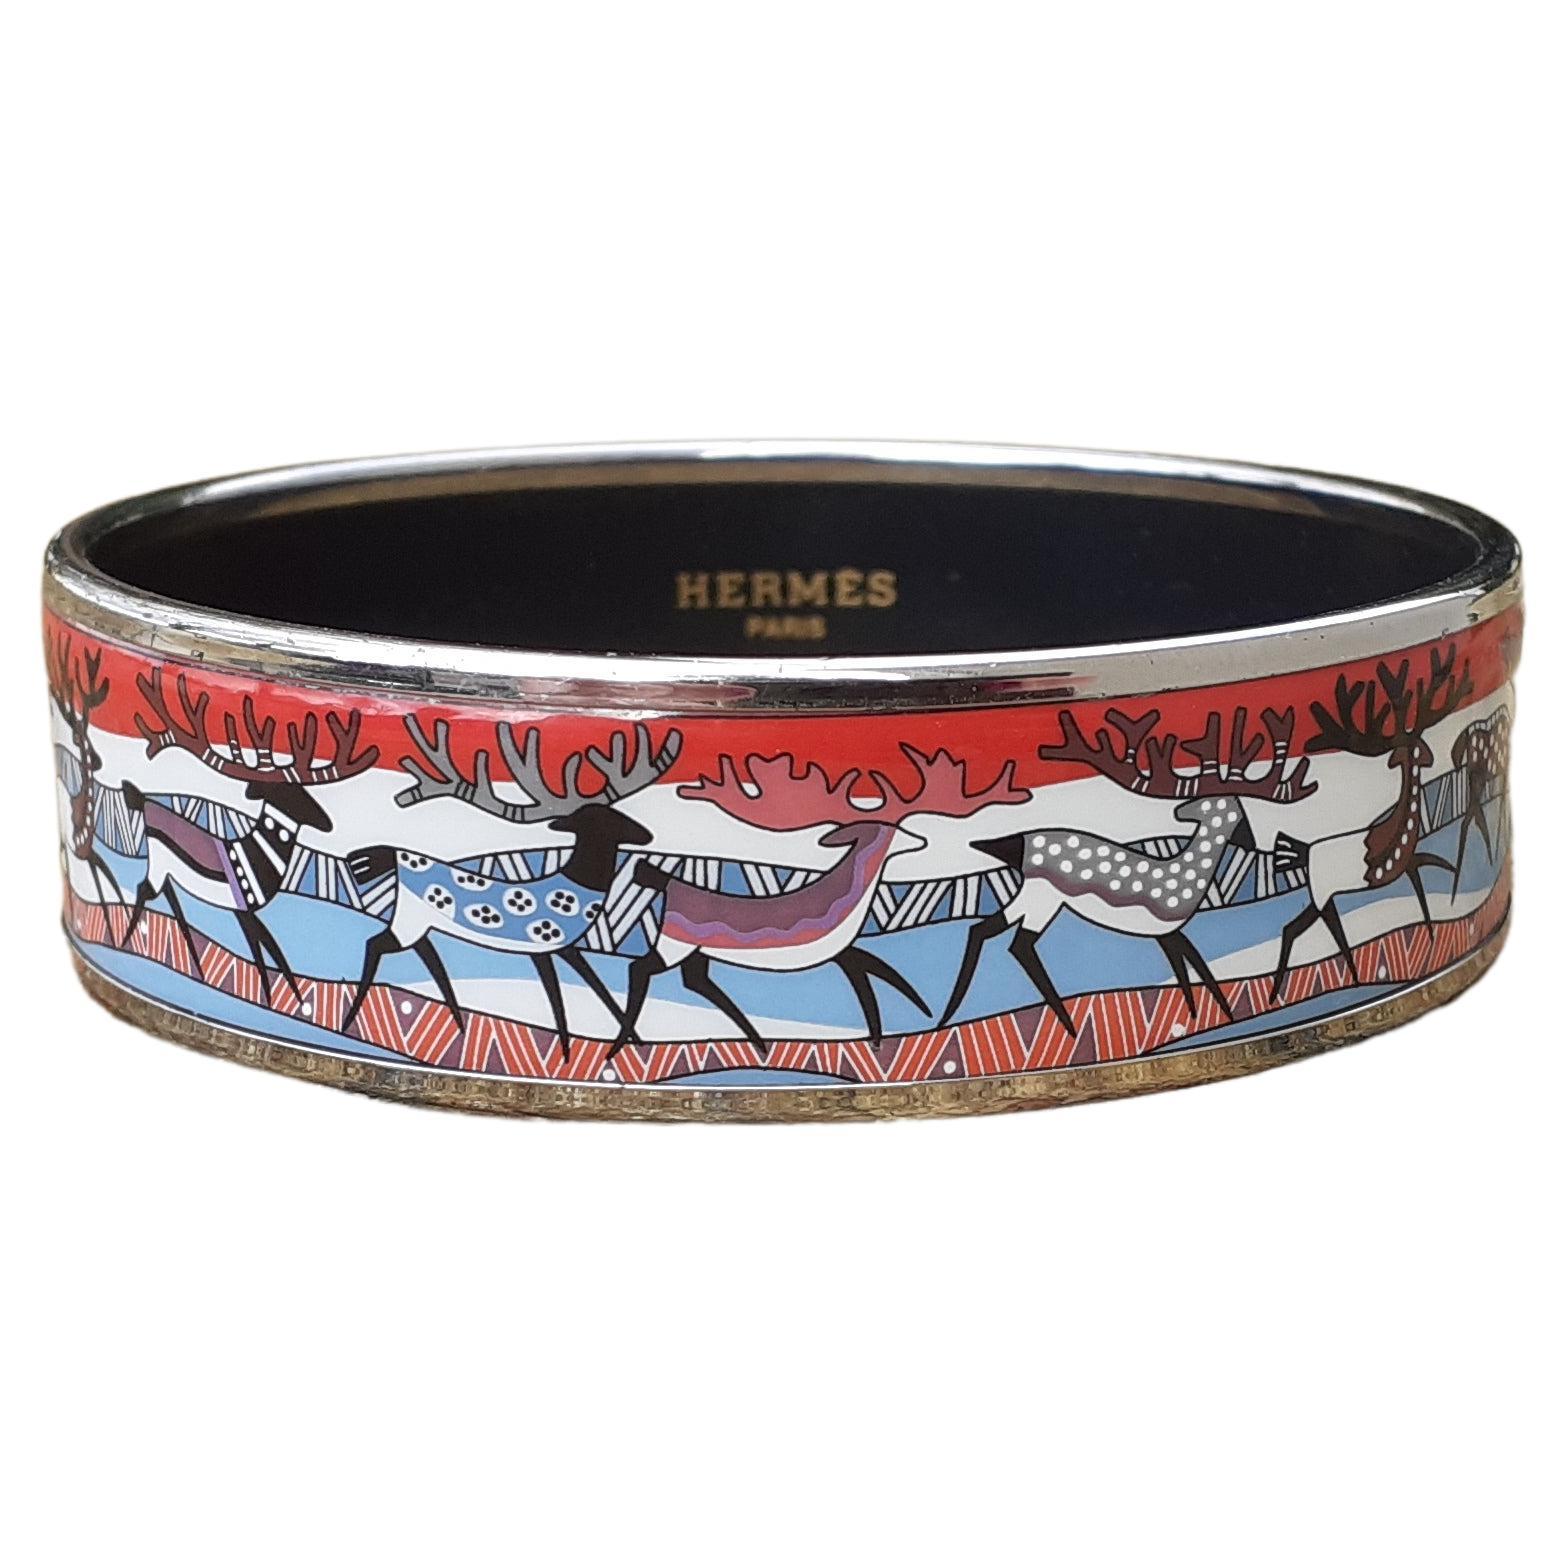 Joli bracelet authentique Hermès

Imprimer : Renne

 D'après le motif 